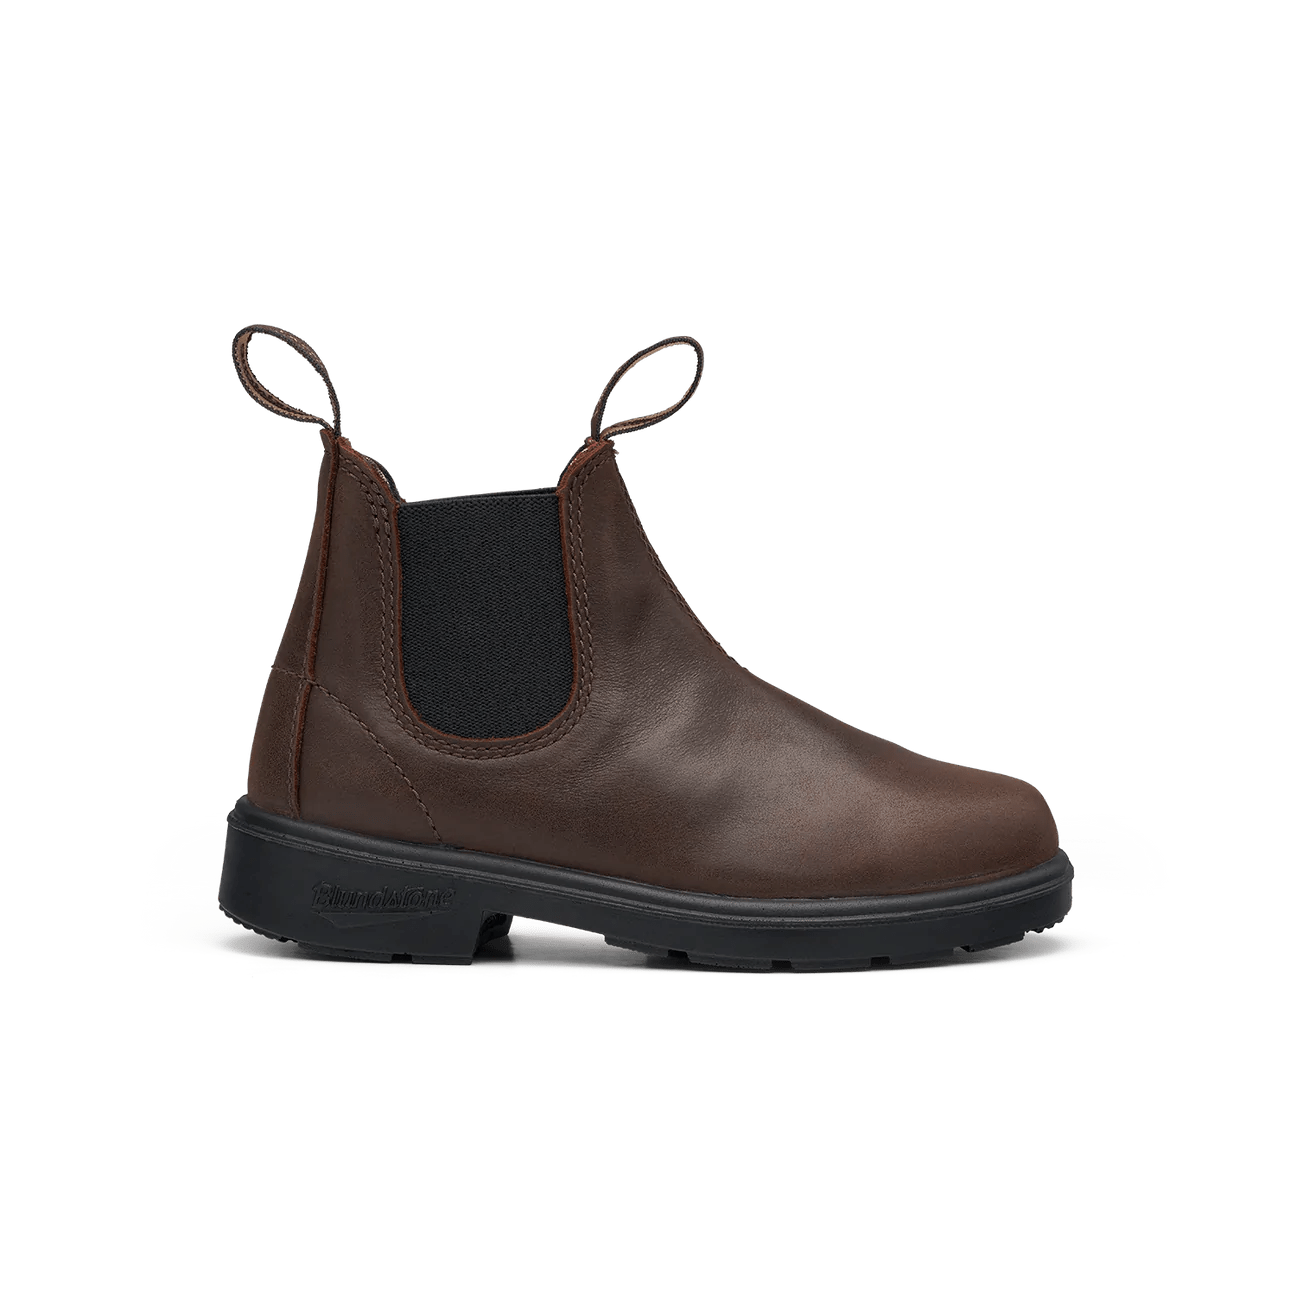 Blundstone boots AUS 7/US 8 Blundstone 1468 - Kids Antique Brown